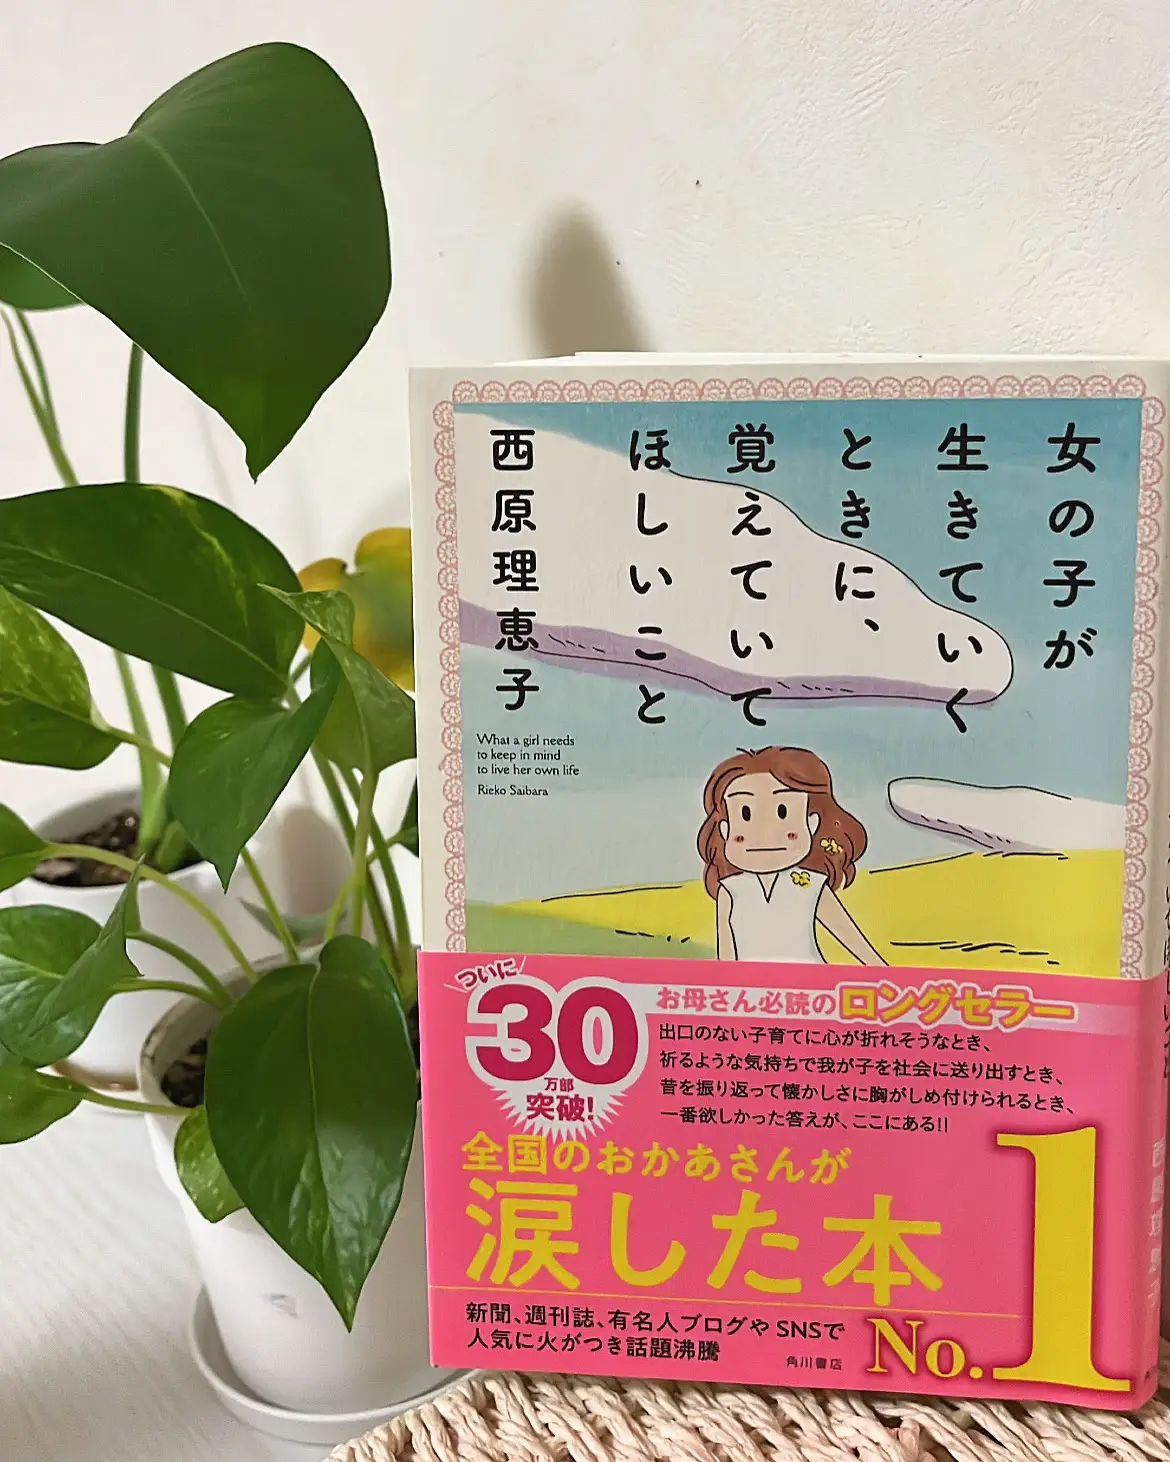 Faith-Based Magazine for Women - Lemon8検索